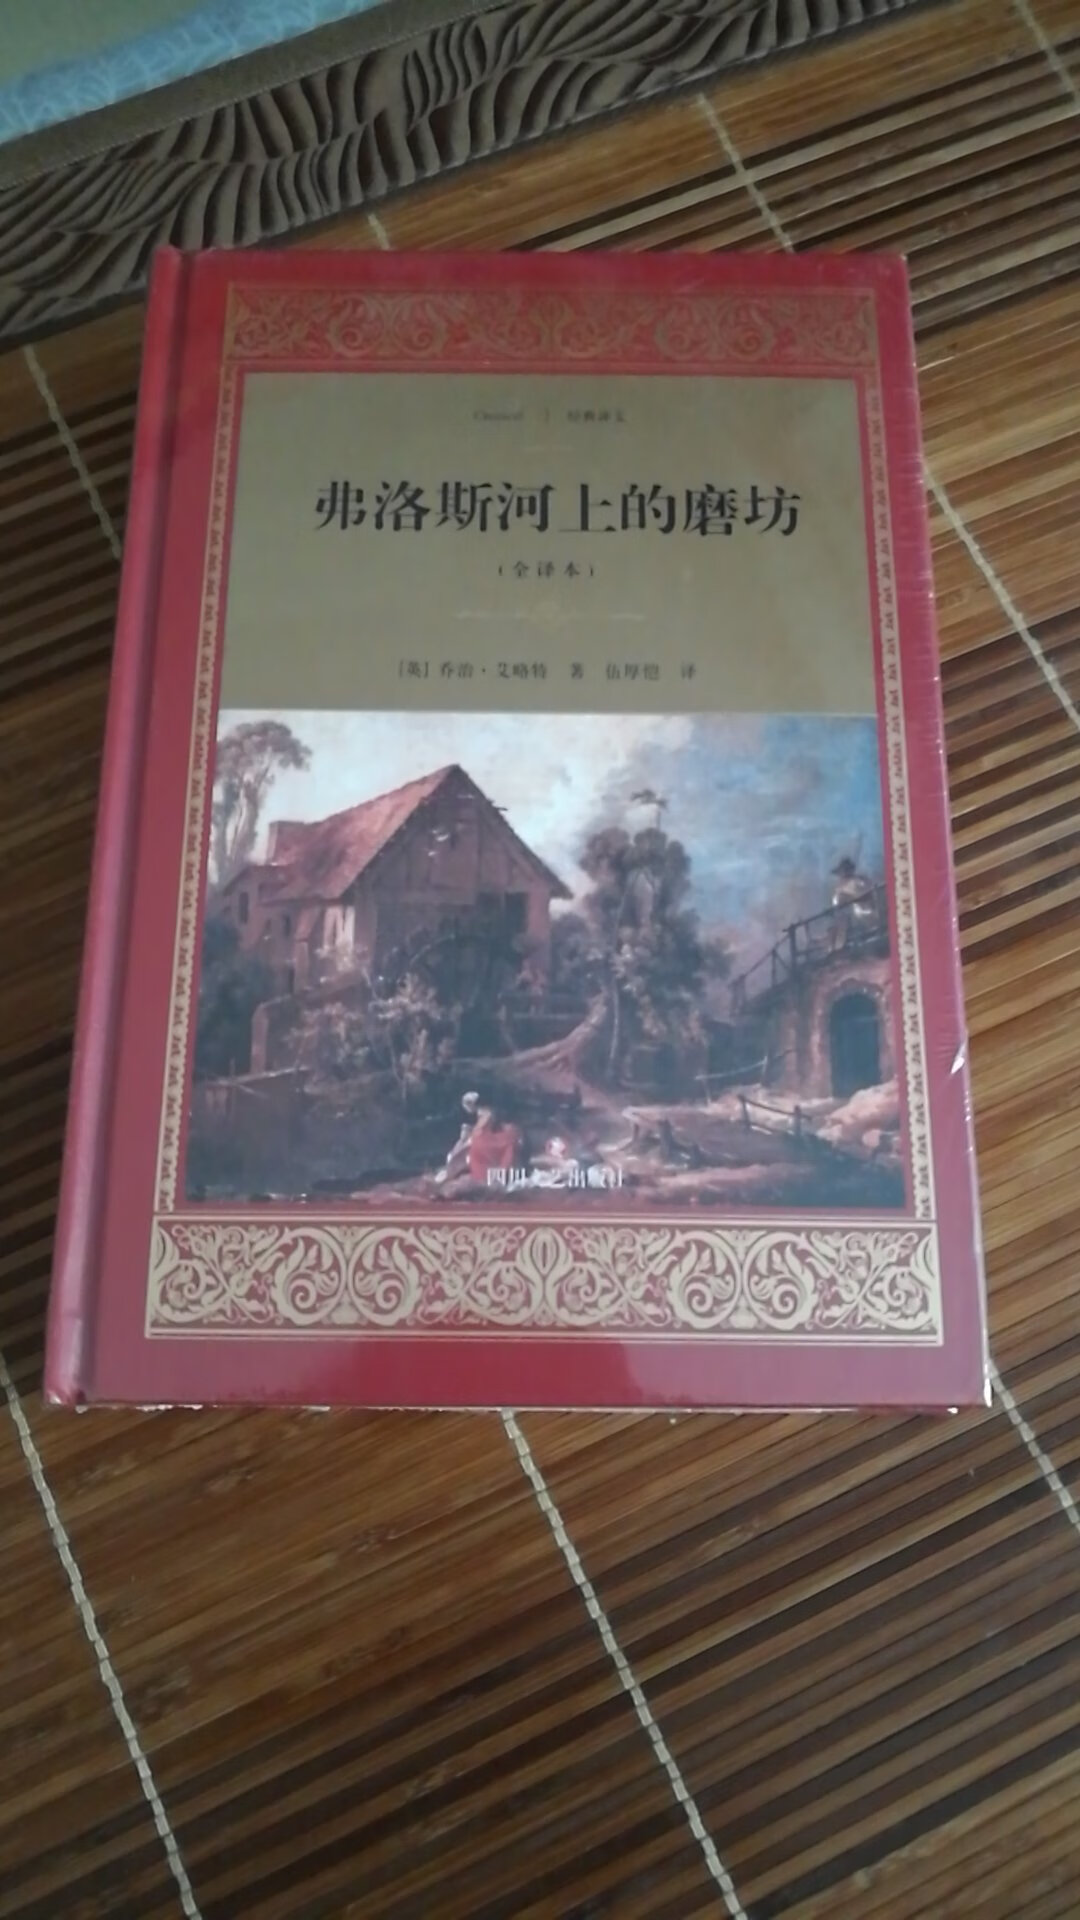 上大学时买了一本英文原版，四年都没有看完。毕业时把书扔了，现在买了本翻译的中文版，应该可以看完了吧。书包装不错，印刷精美，版本也很新。